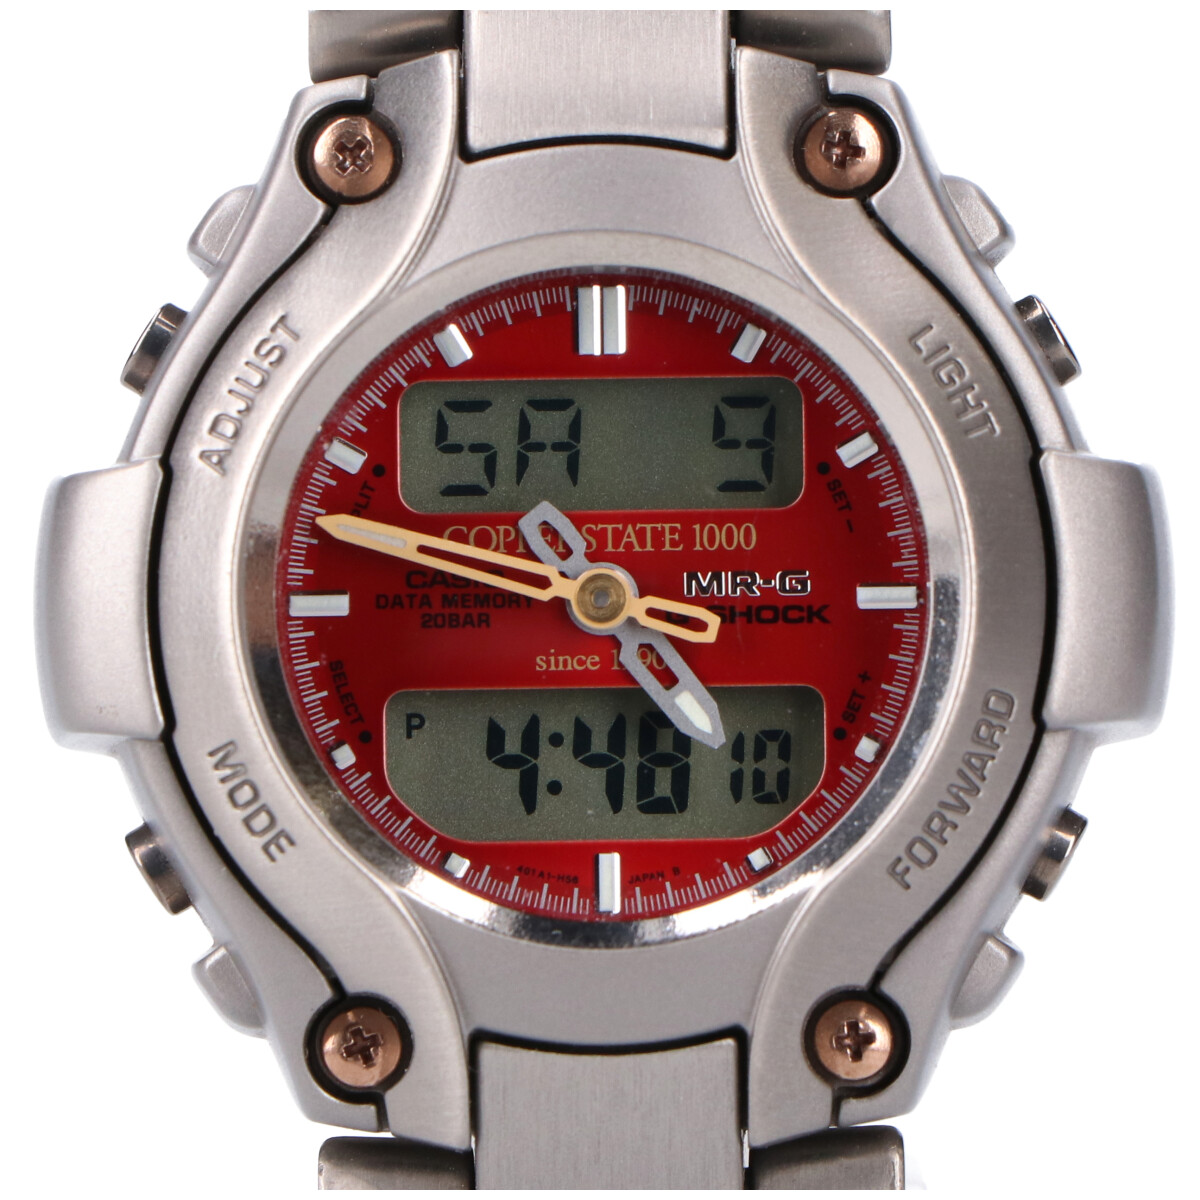 G-SHOCKのシルバー MRG-130TC チタン MR-Gシリーズ クーパーステイト デジアナ腕時計の買取実績です。